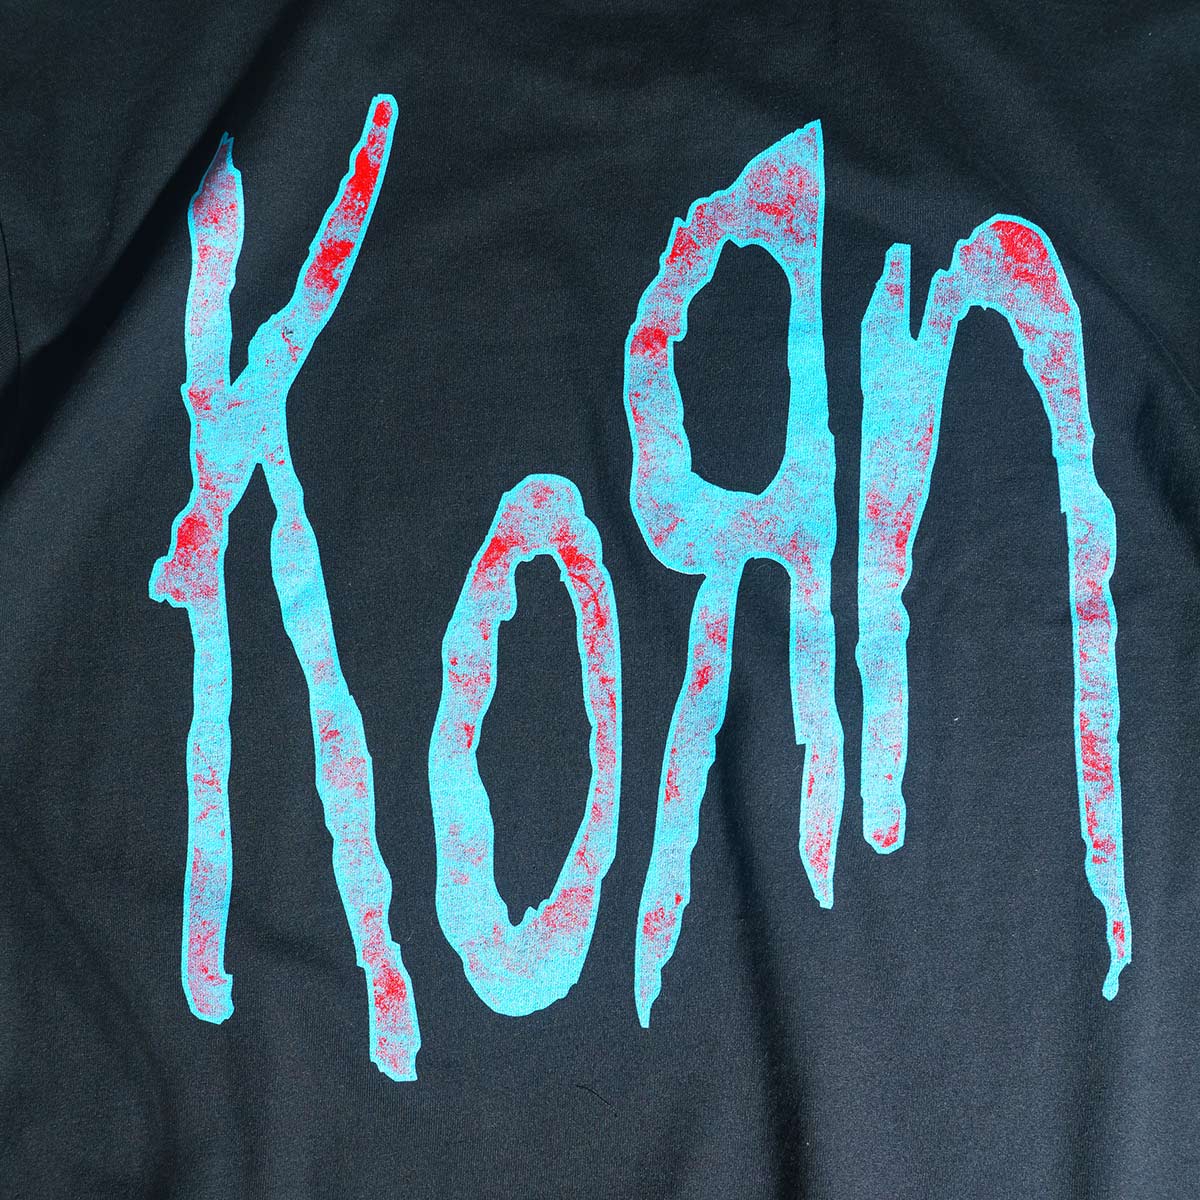 korn tシャツの商品一覧 通販 - Yahoo!ショッピング